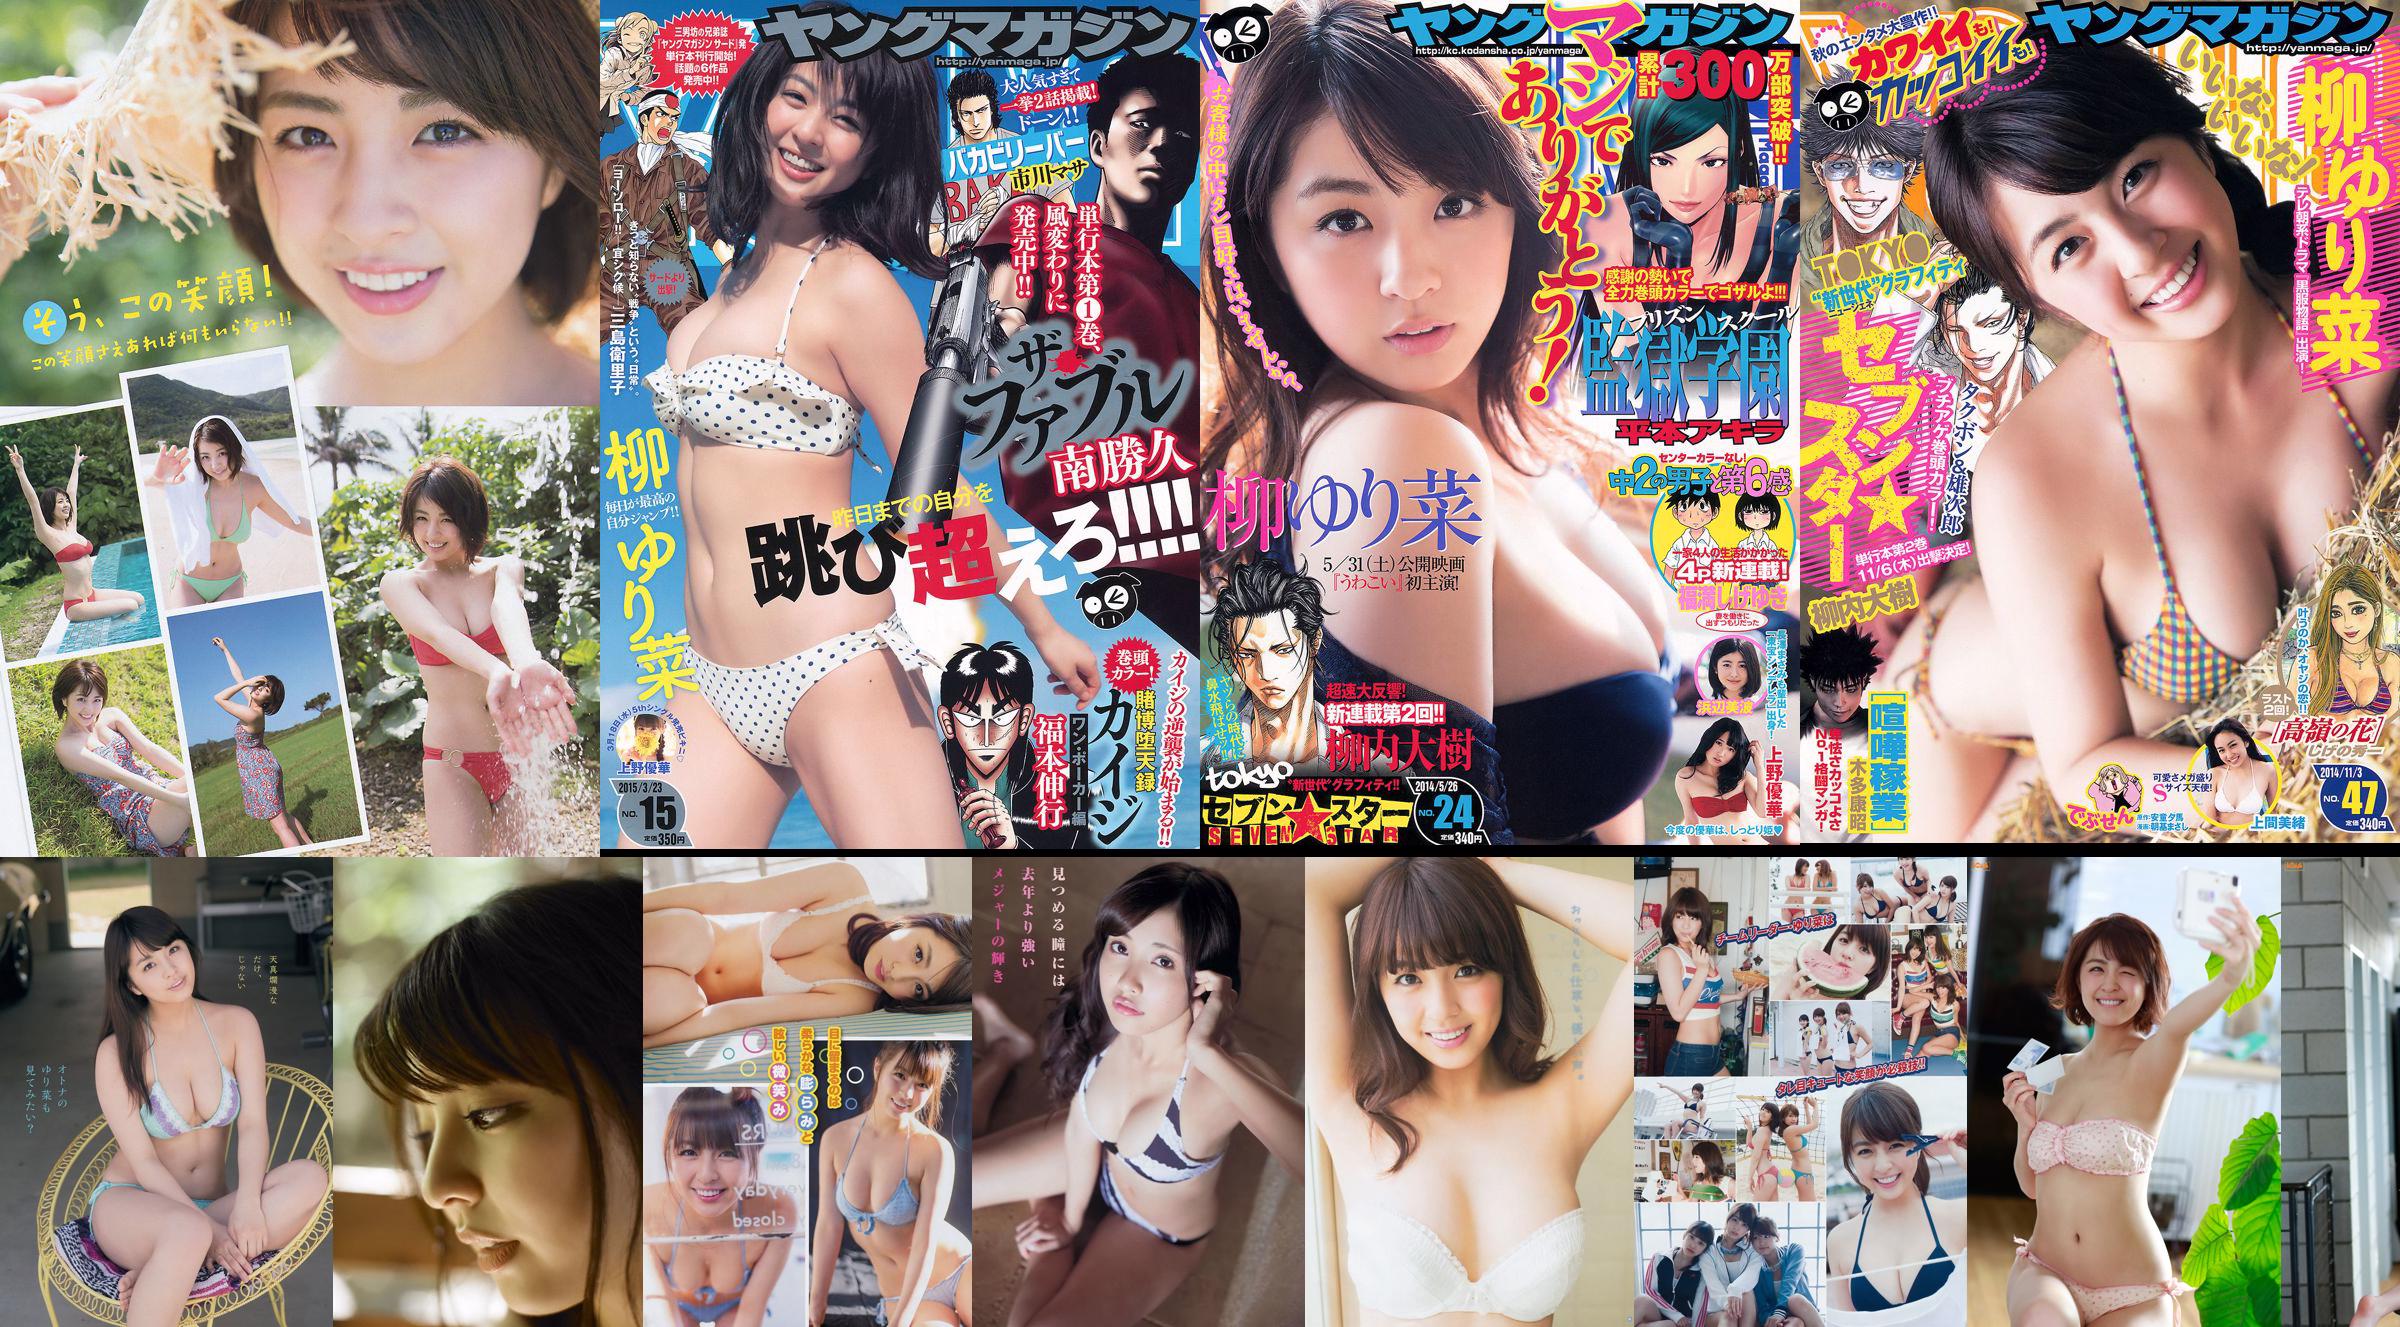 [FLASH] Yurina Yanagi Kyoko Fukada Naoko Kawai Tomomi Kahara 2015.08.18-25 Photograph No.7ab633 Page 1